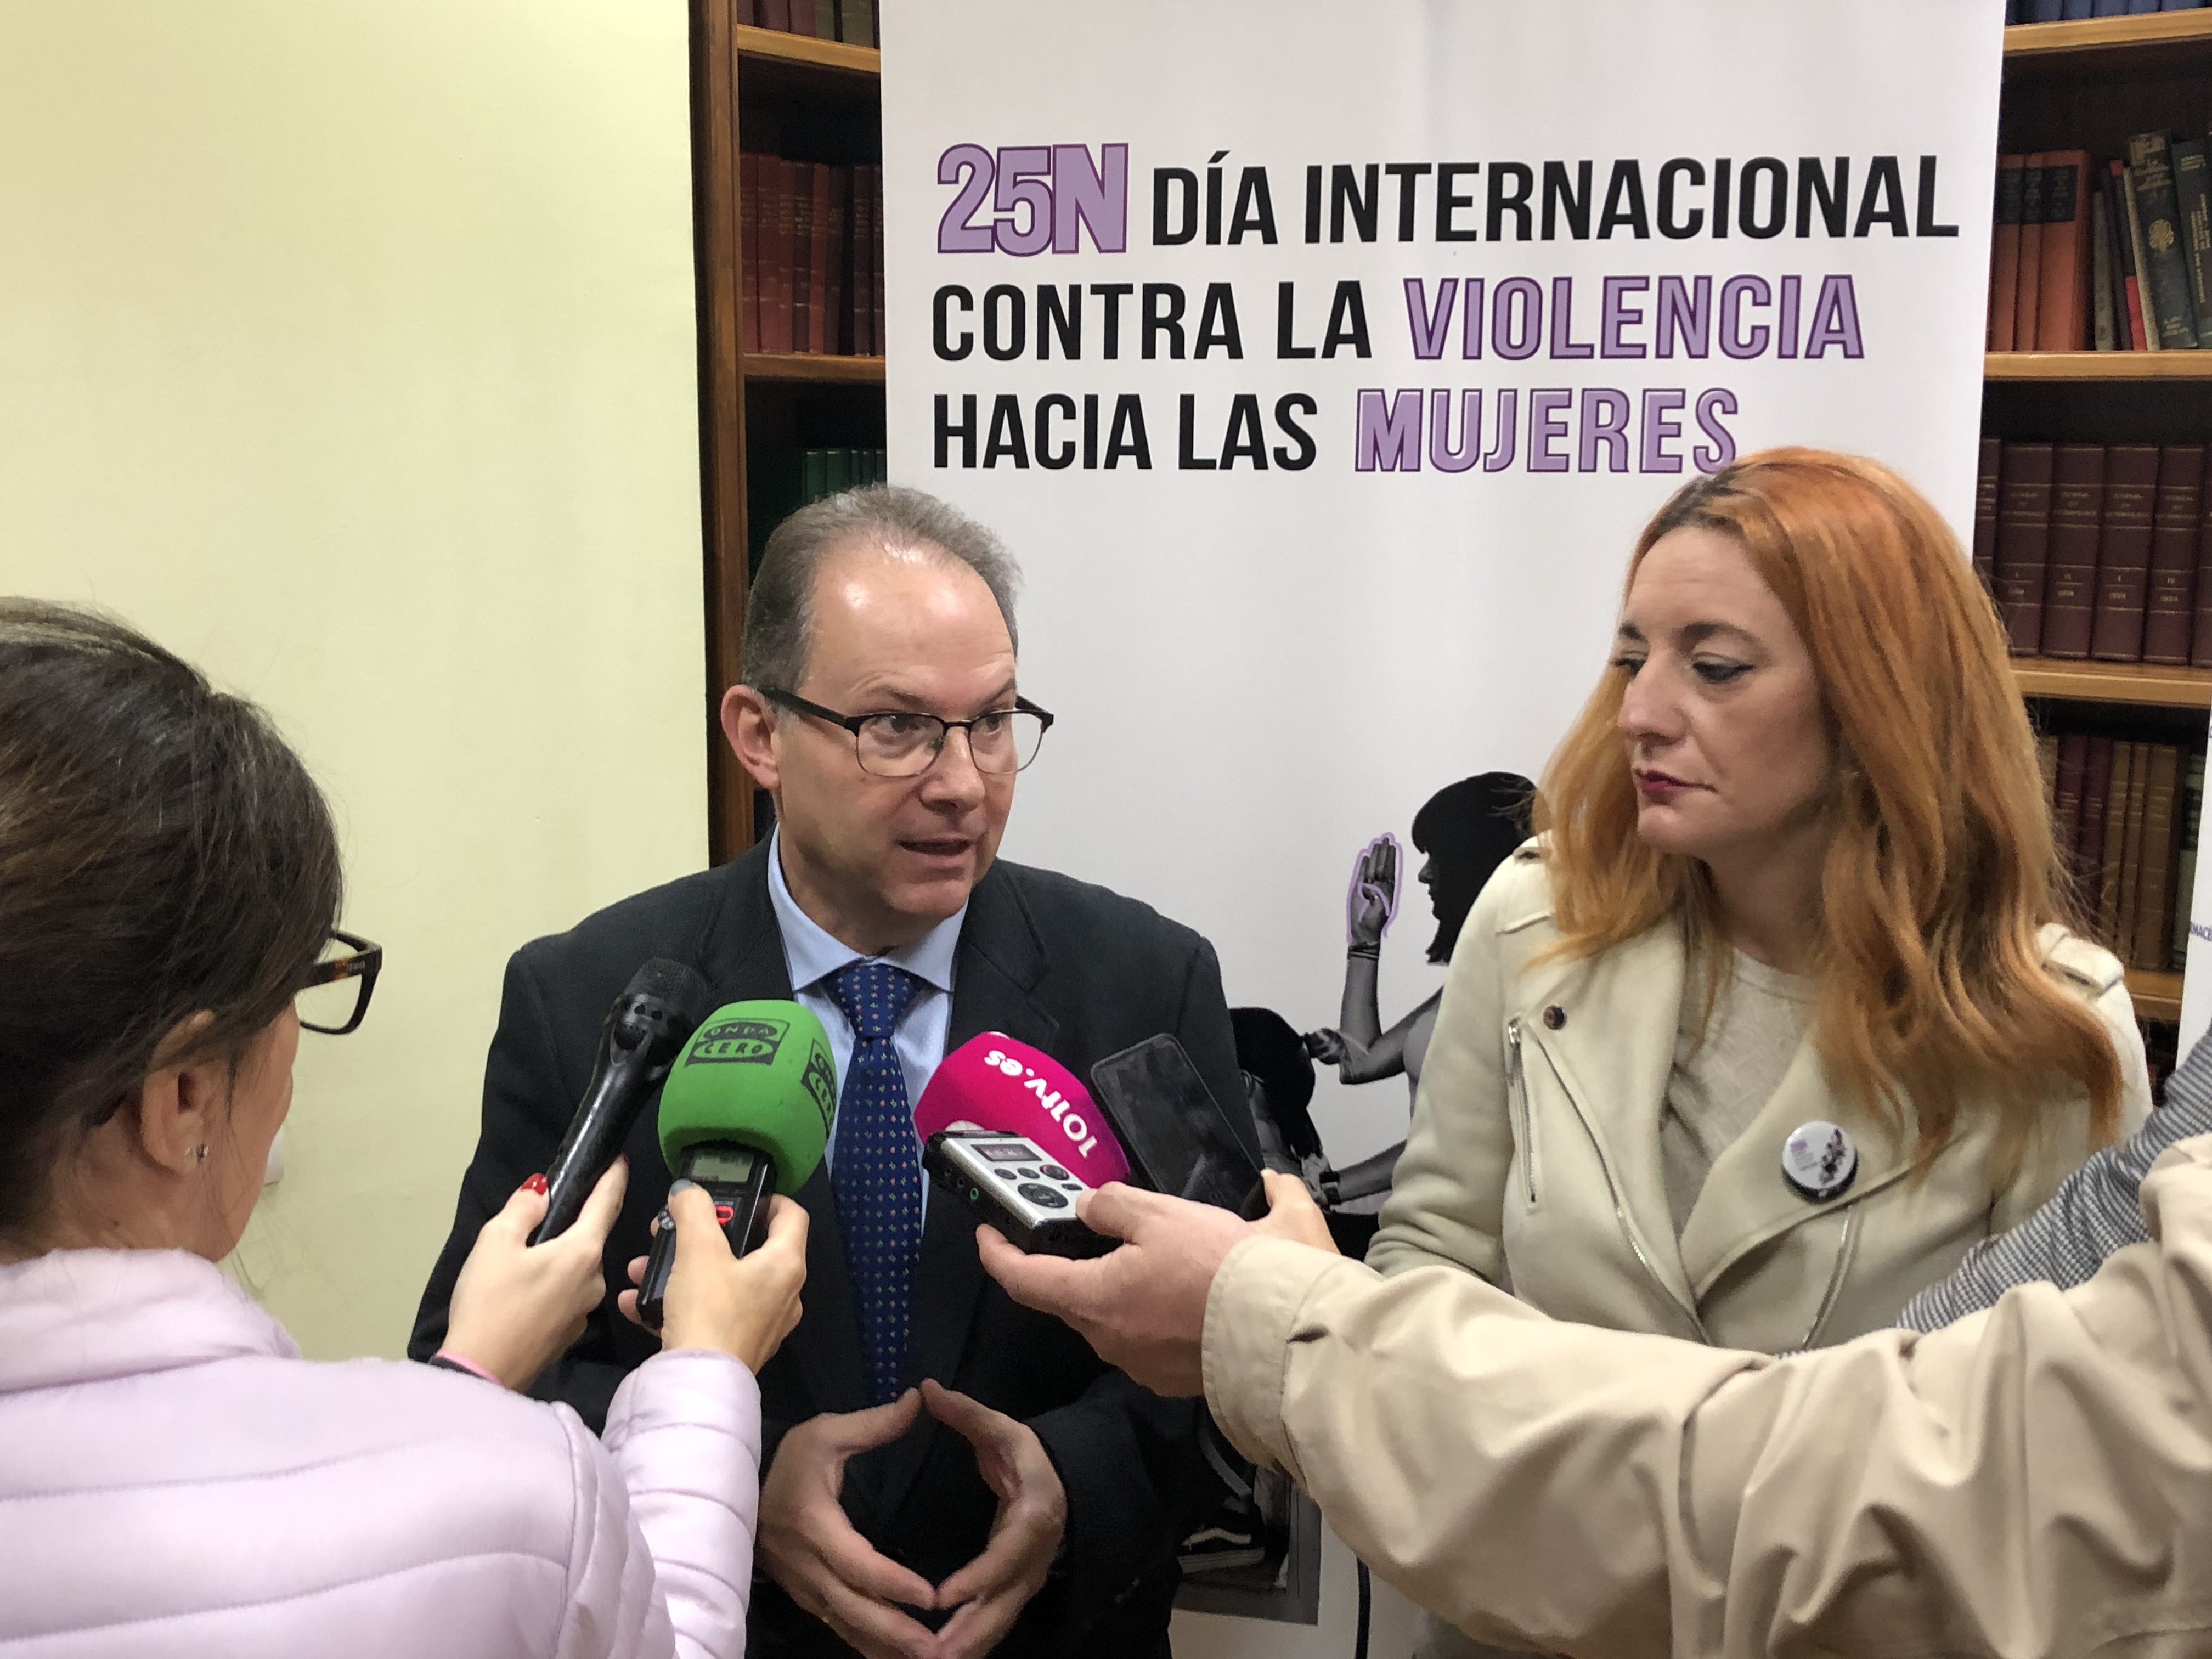 El Ayuntamiento de Sevilla y el Colegio de Farmacéuticos suscriben un convenio de colaboración por el que más de 400 farmacias de la ciudad ayudarán a informar, sensibilizar y prevenir sobre posibles casos de violencia de género